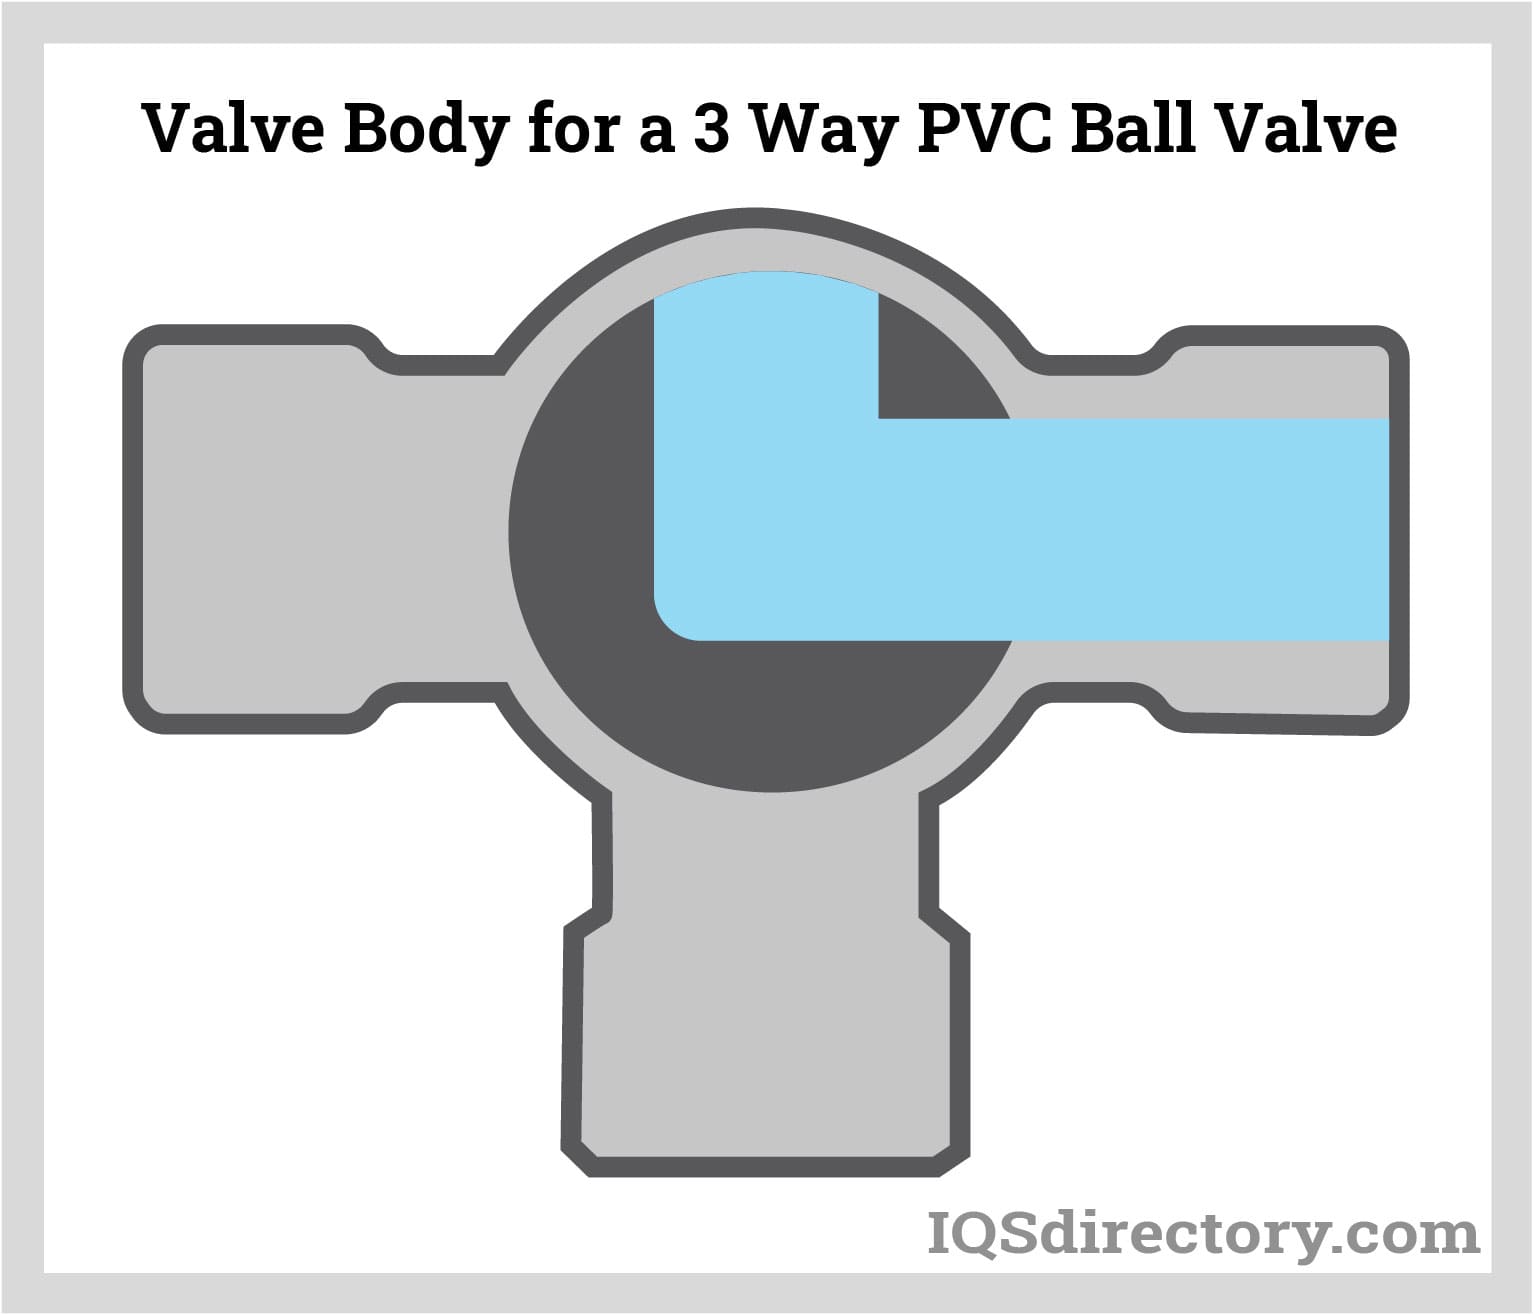 Valve Body for a 3 Way PVC Ball Valve